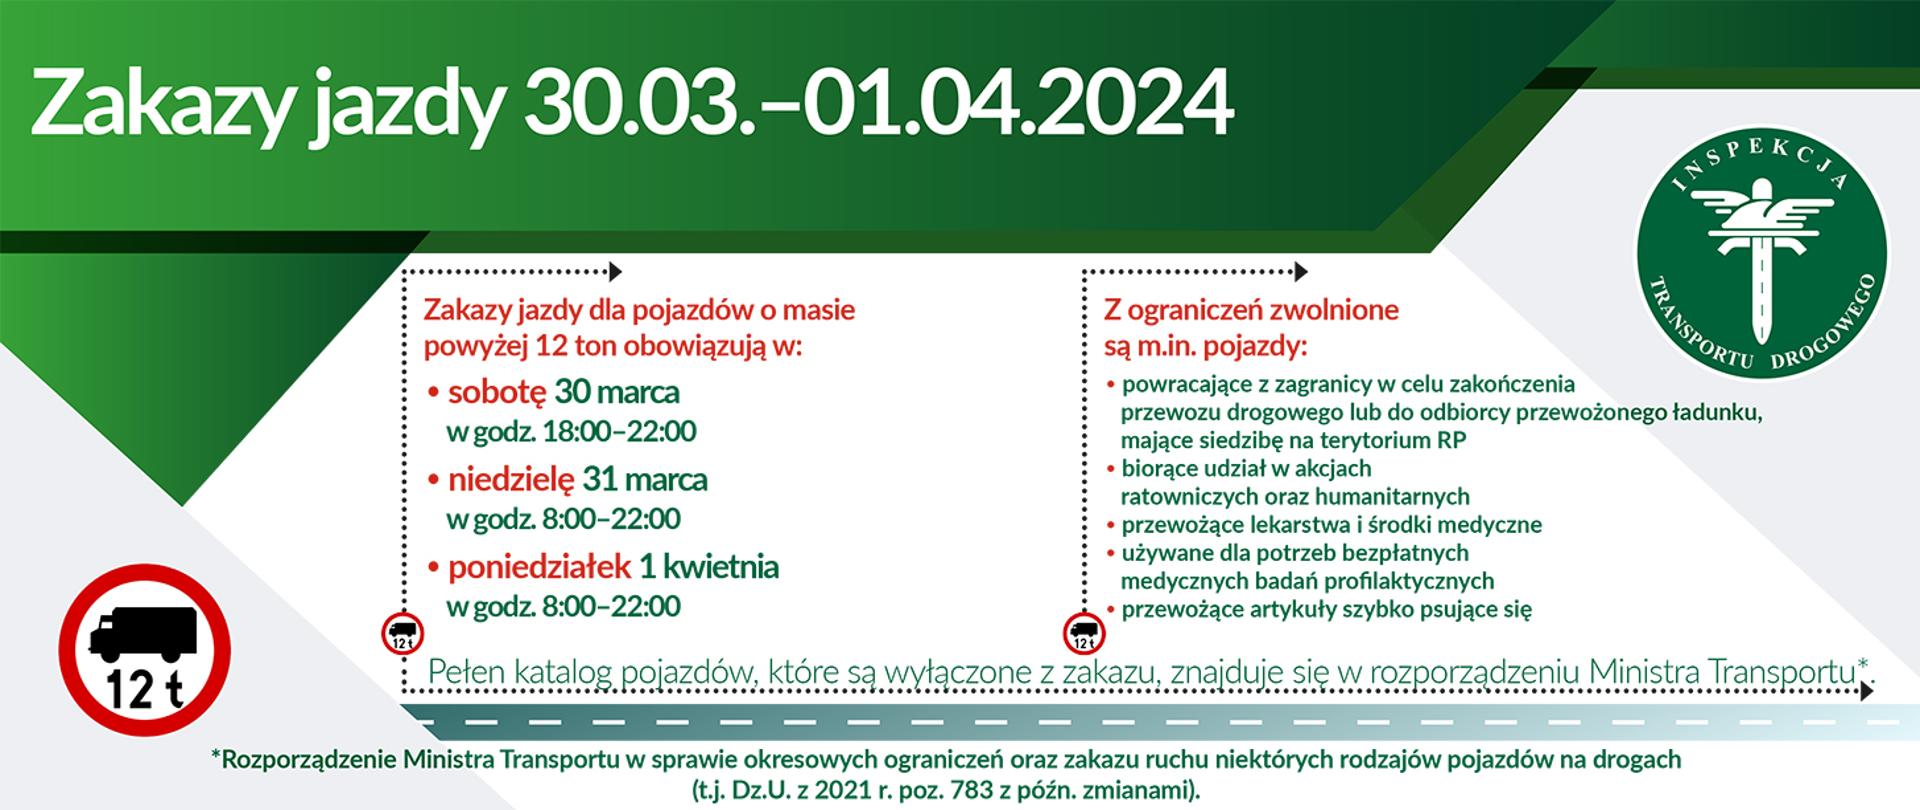 W okresie Świąt Wielkanocnych obowiązują ograniczenia w ruchu dla niektórych pojazdów o dmc powyżej 12 ton. Ograniczenia obowiązują w godzinach: 30 marca (sobota) – w godz. 18:00–22:00, 31 marca (niedziela) – w godz. 8:00–22:00, 1 kwietnia (poniedziałek) – w godz. 8:00–22:00. Z zakazów ruchu w określonych godzinach zwolnione są autobusy i niektóre grupy pojazdów, o których mowa w rozporządzeniu Ministra Transportu z dnia 31 lipca 2007 r.